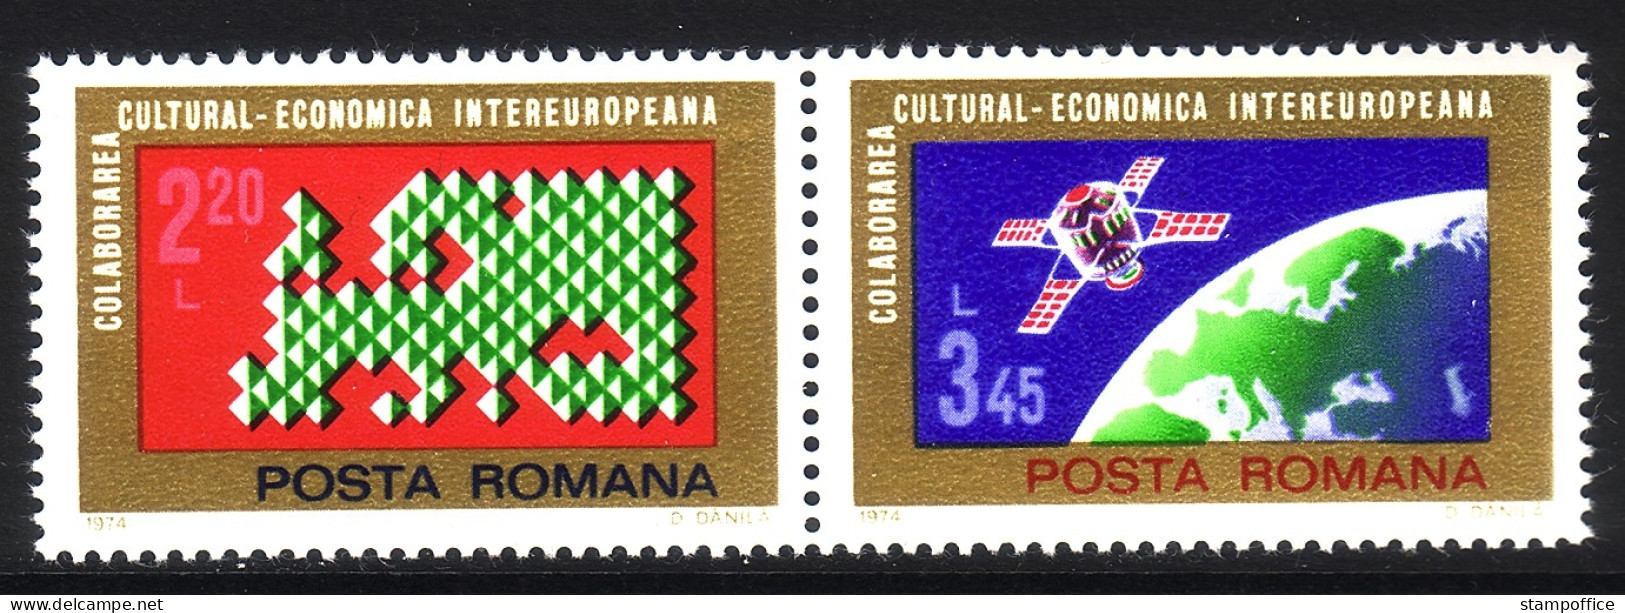 RUMÄNIEN MI-NR. 3189-3190 POSTFRISCH(MINT) EUROPA MITLÄUFER 1974 - INTEREUROPA - Unused Stamps